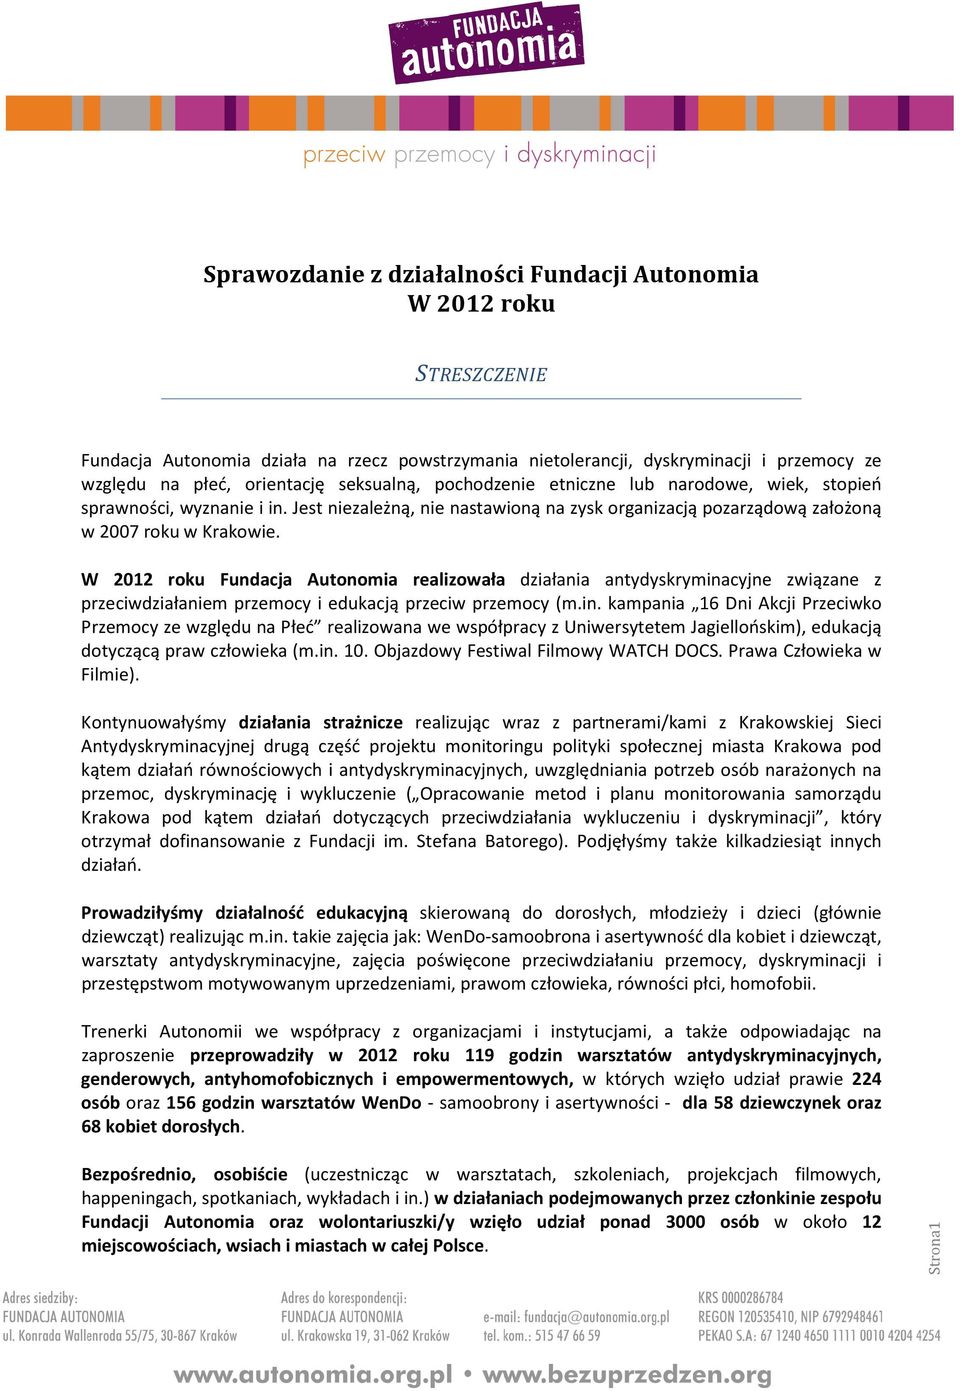 W 2012 roku Fundacja Autonomia realizowała działania antydyskrymina